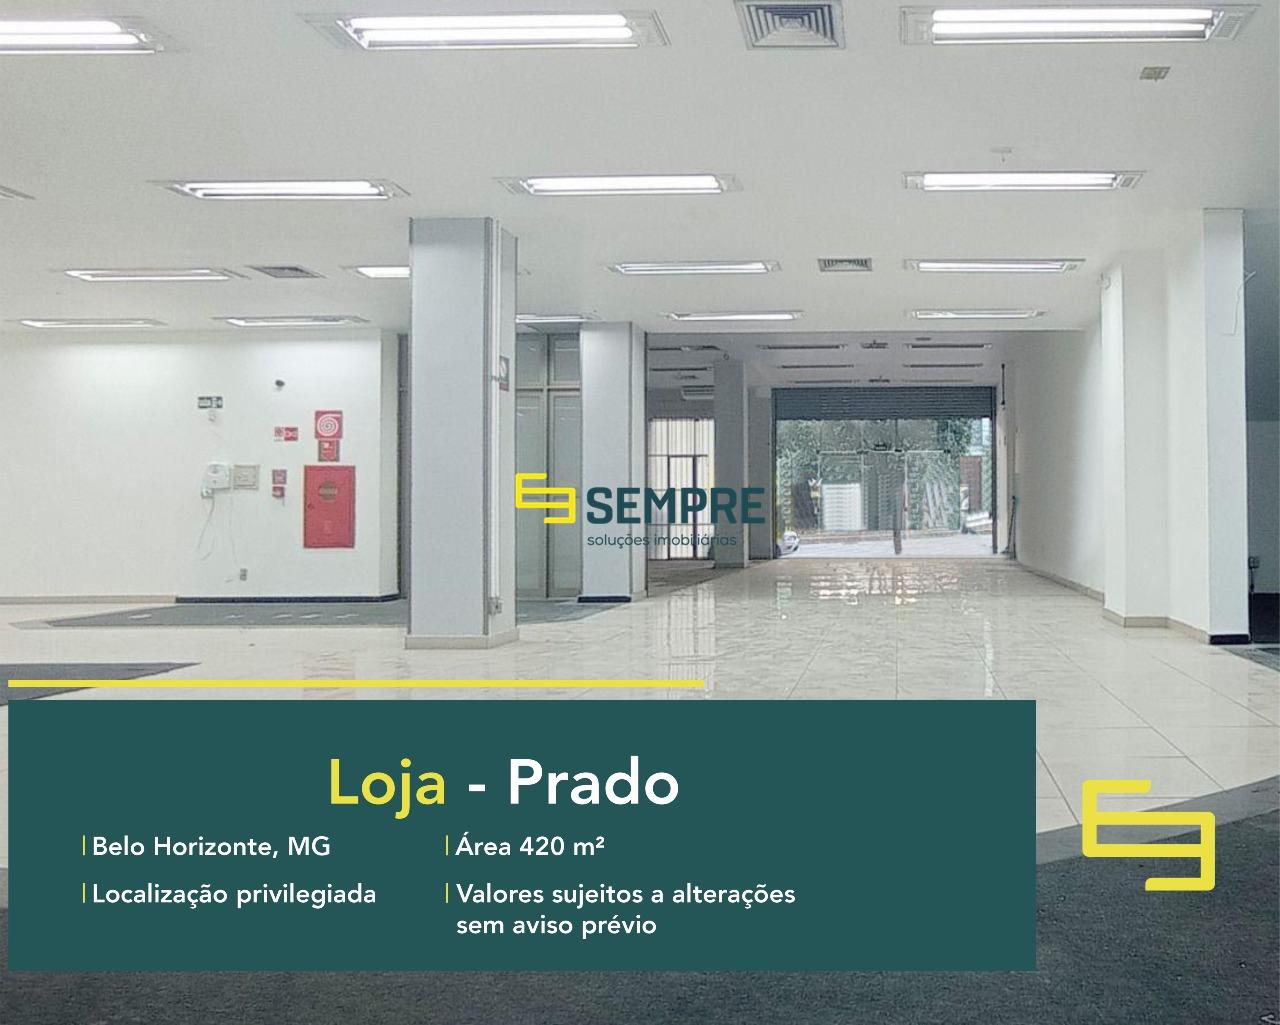 Loja para alugar no Prado em Belo Horizonte, excelente localização. O estabelecimento comercial conta, sobretudo, com área de 420 m².